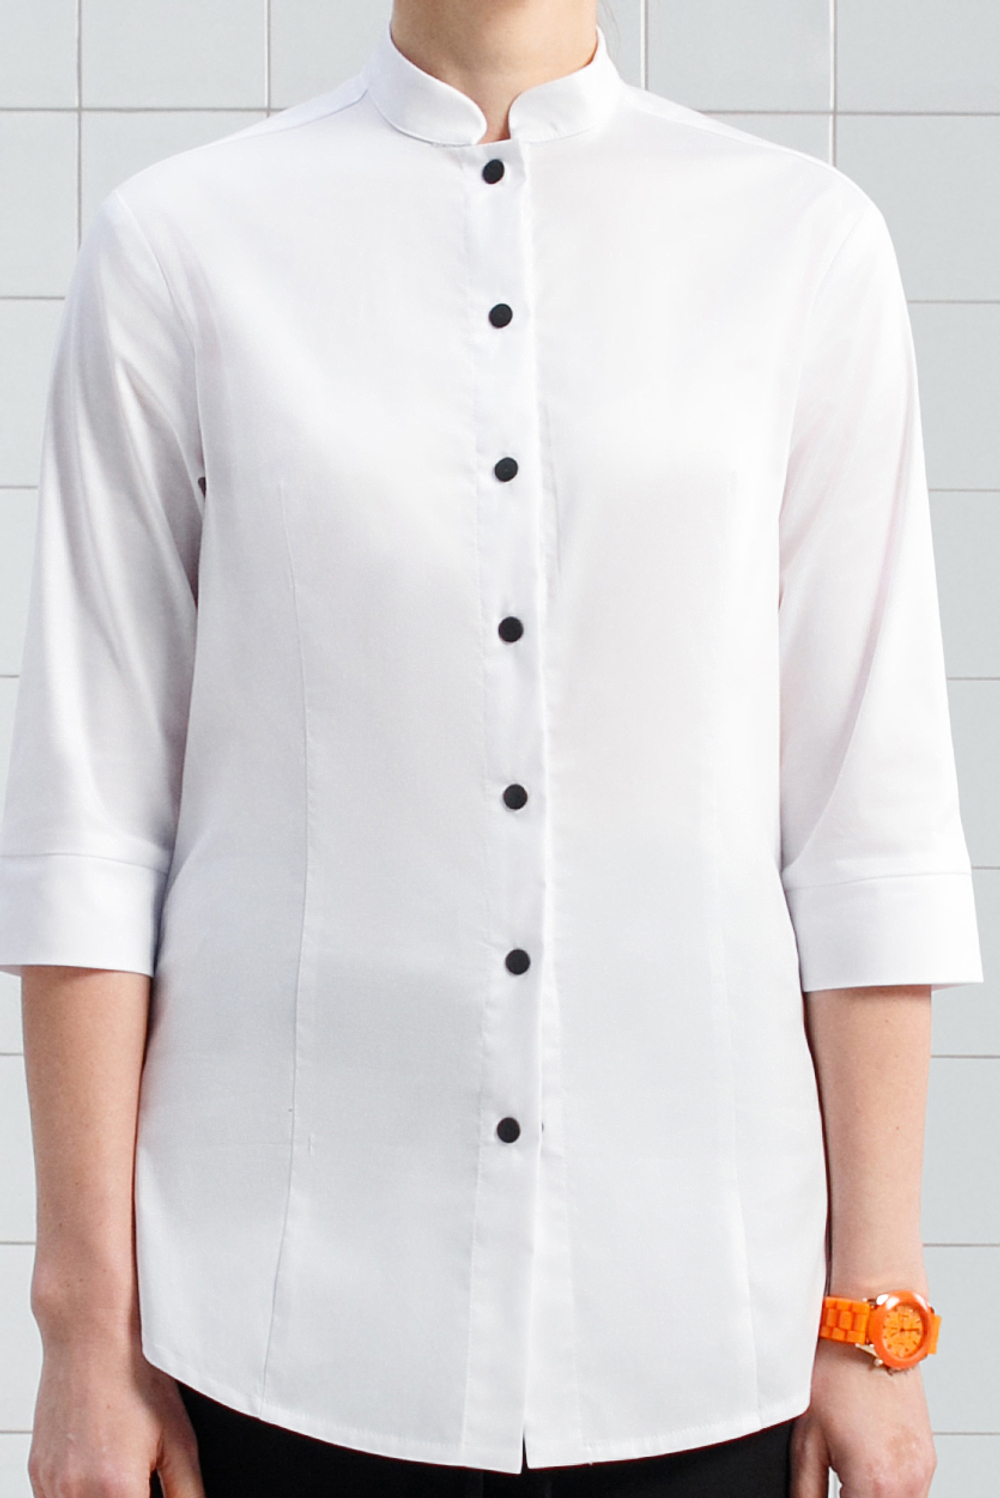 Рубашка - китель с прямой застежкой белая женская